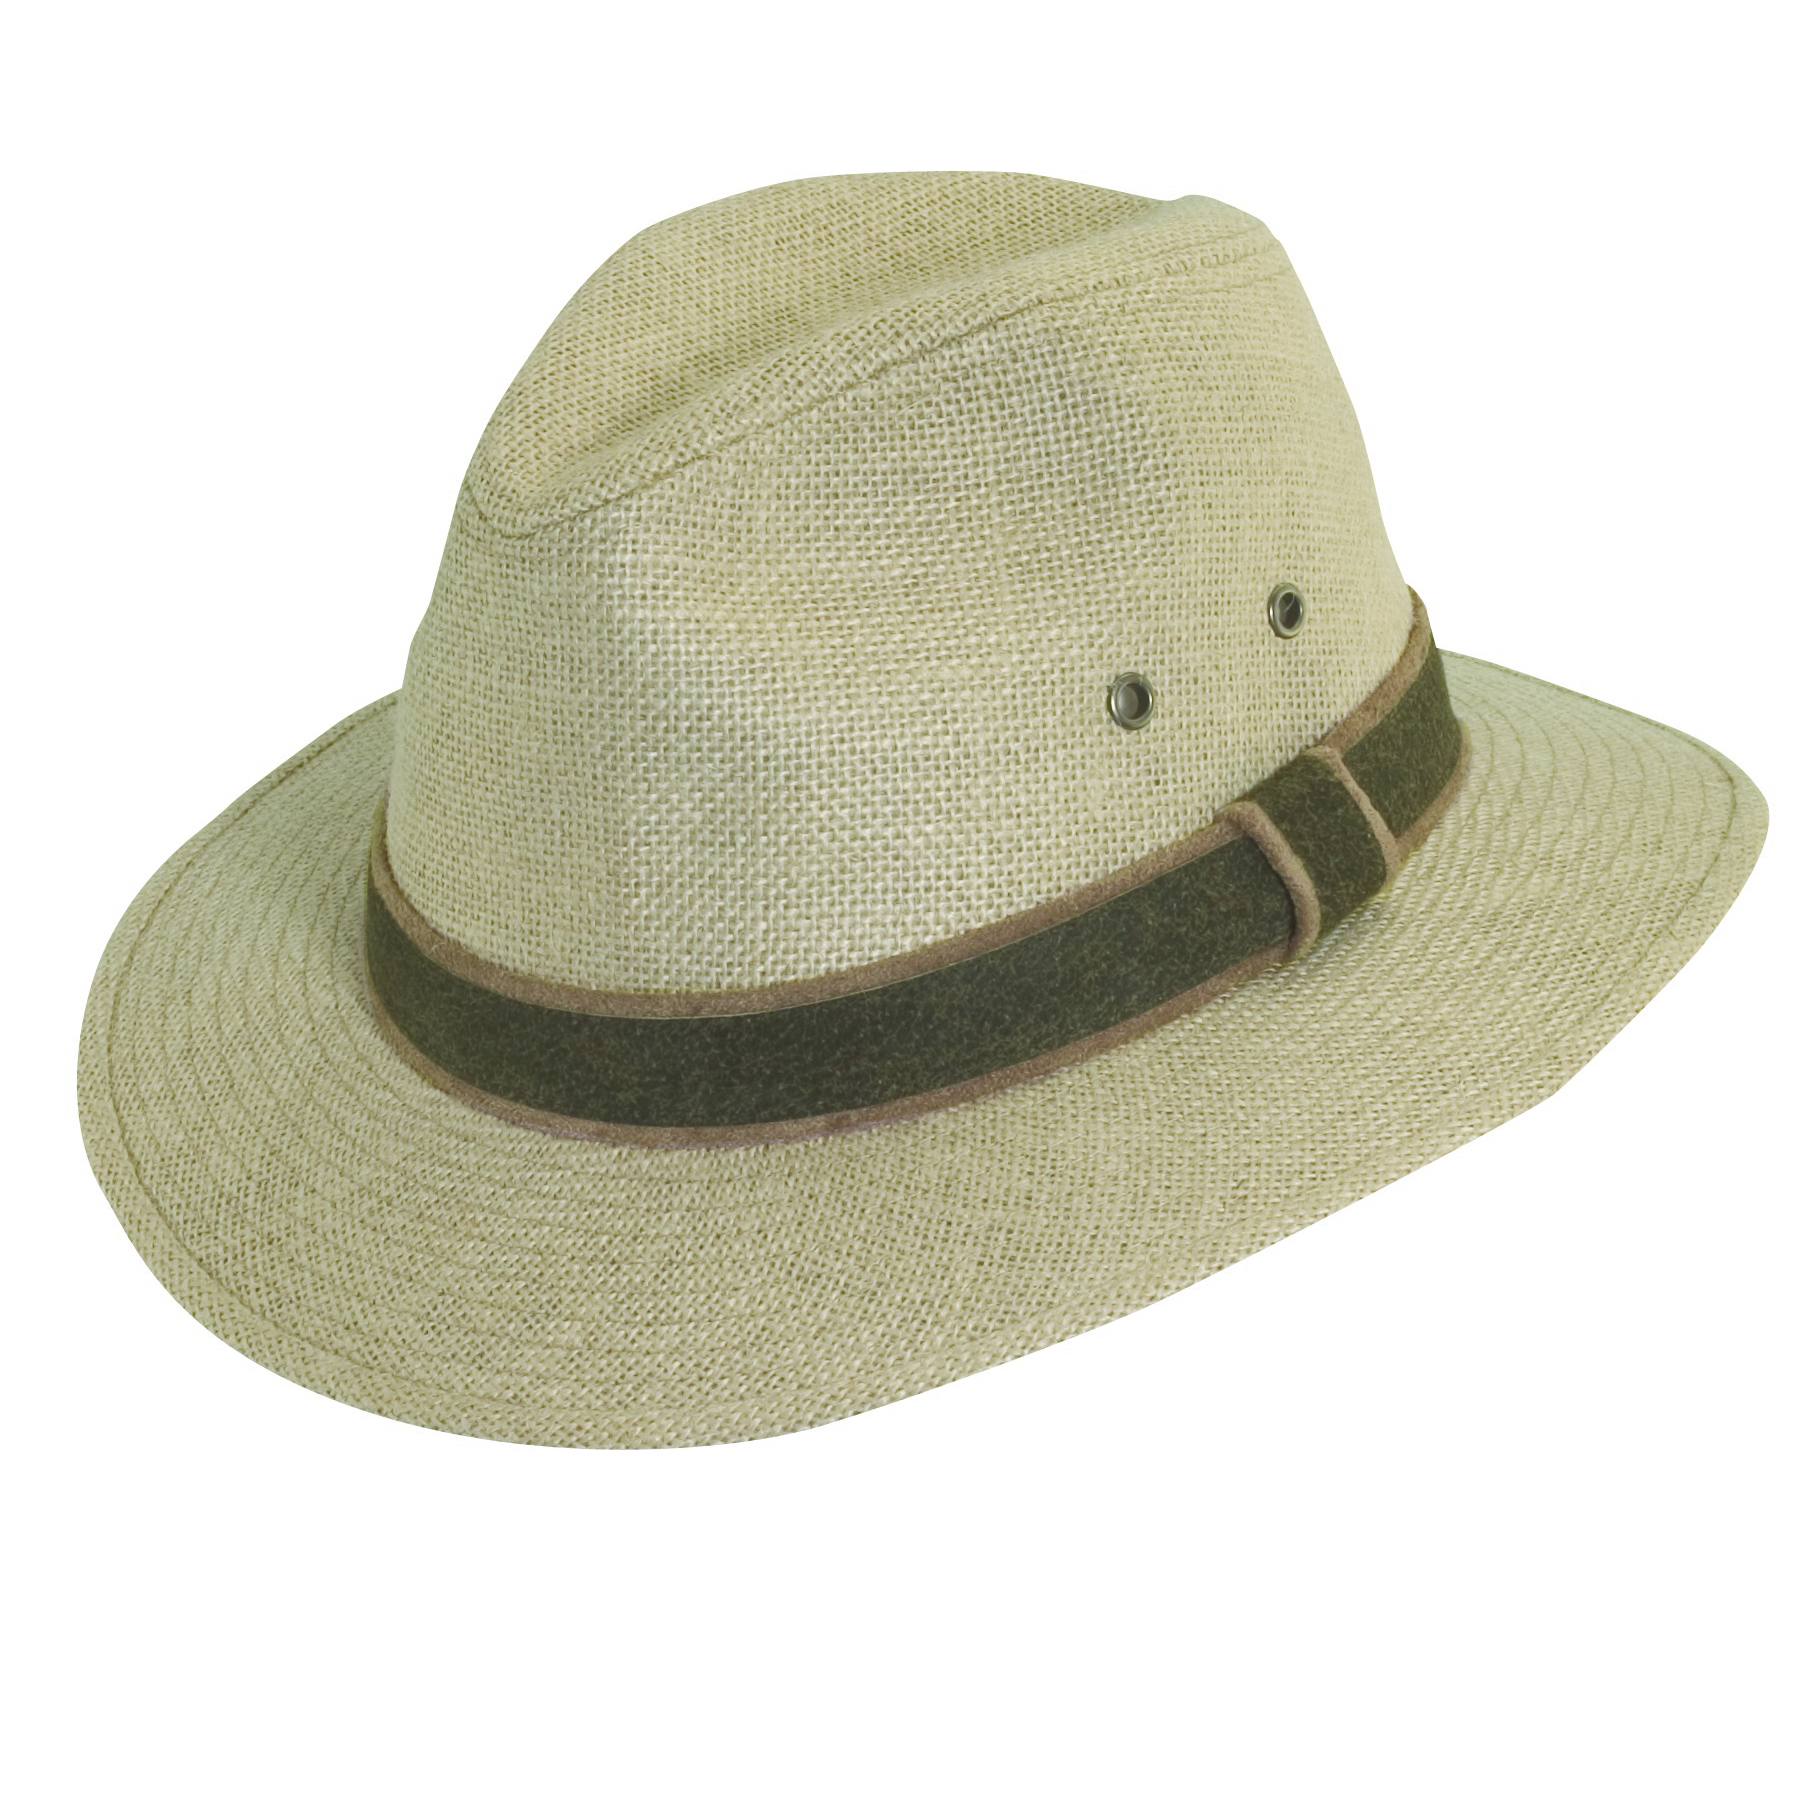 safari hats on amazon